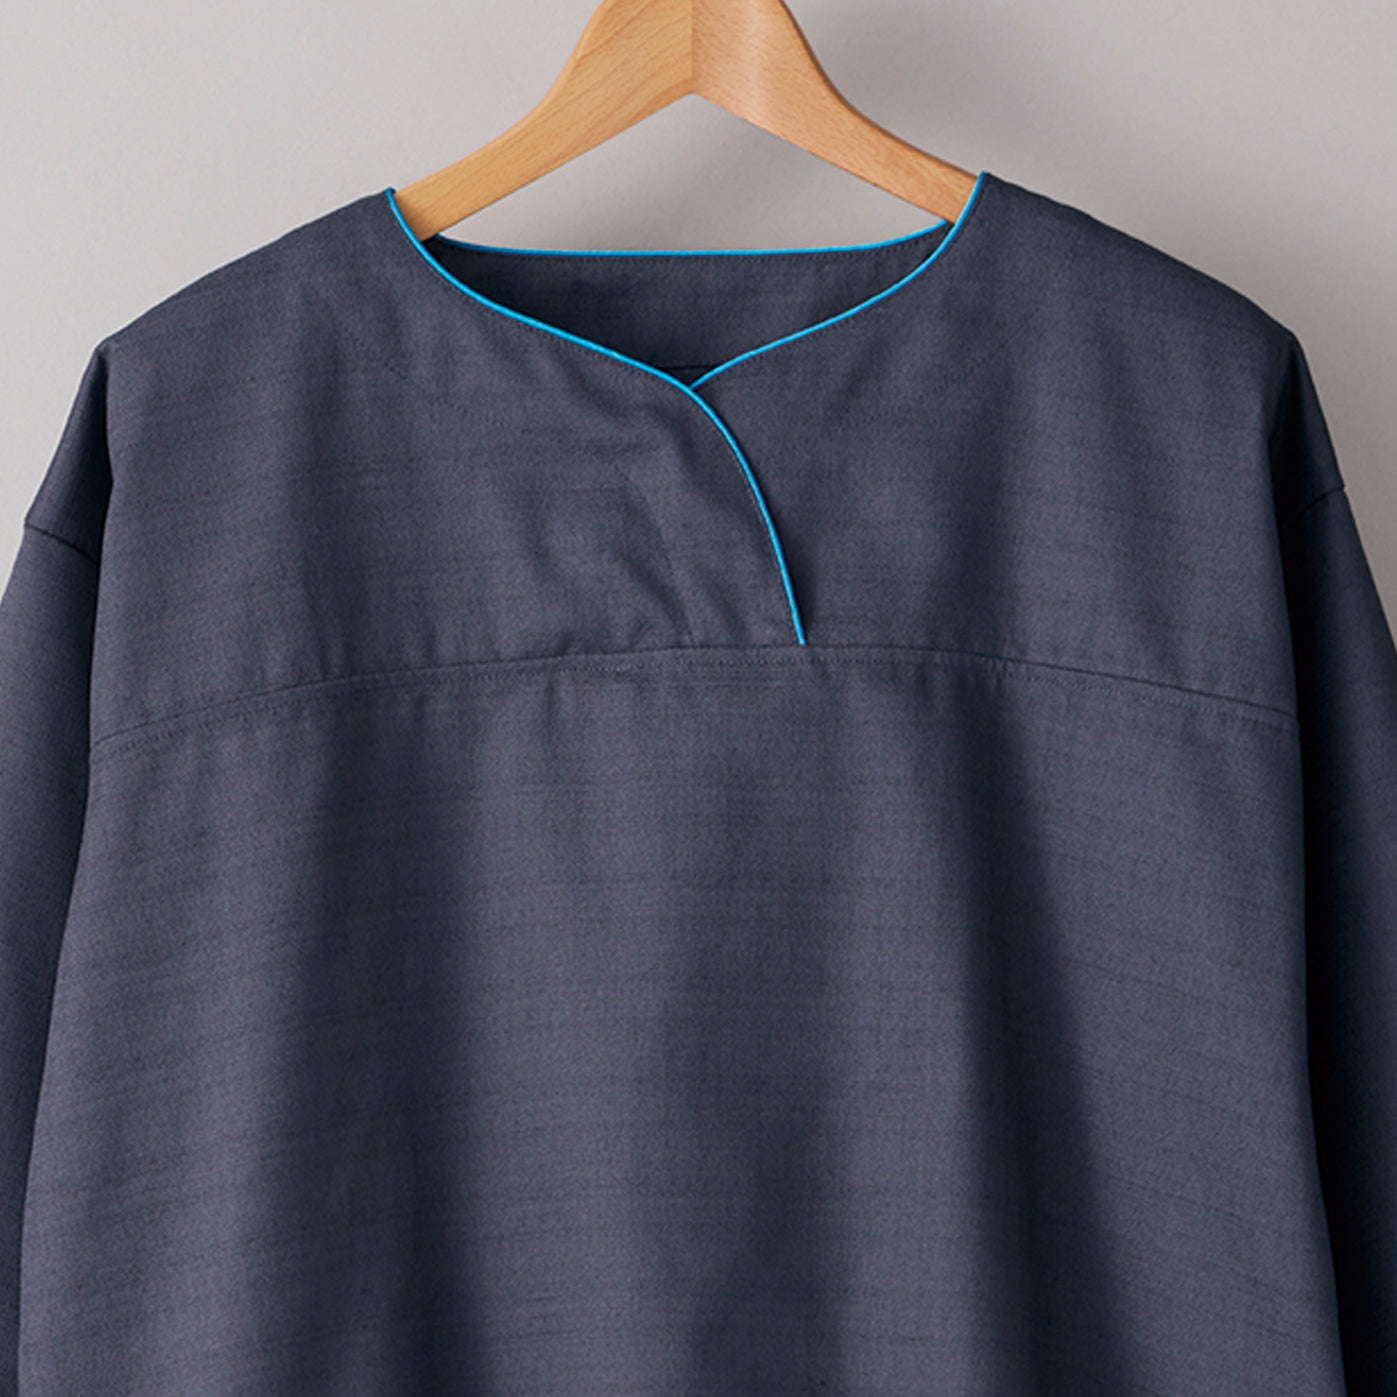 Pajamas_006〈blue gray〉